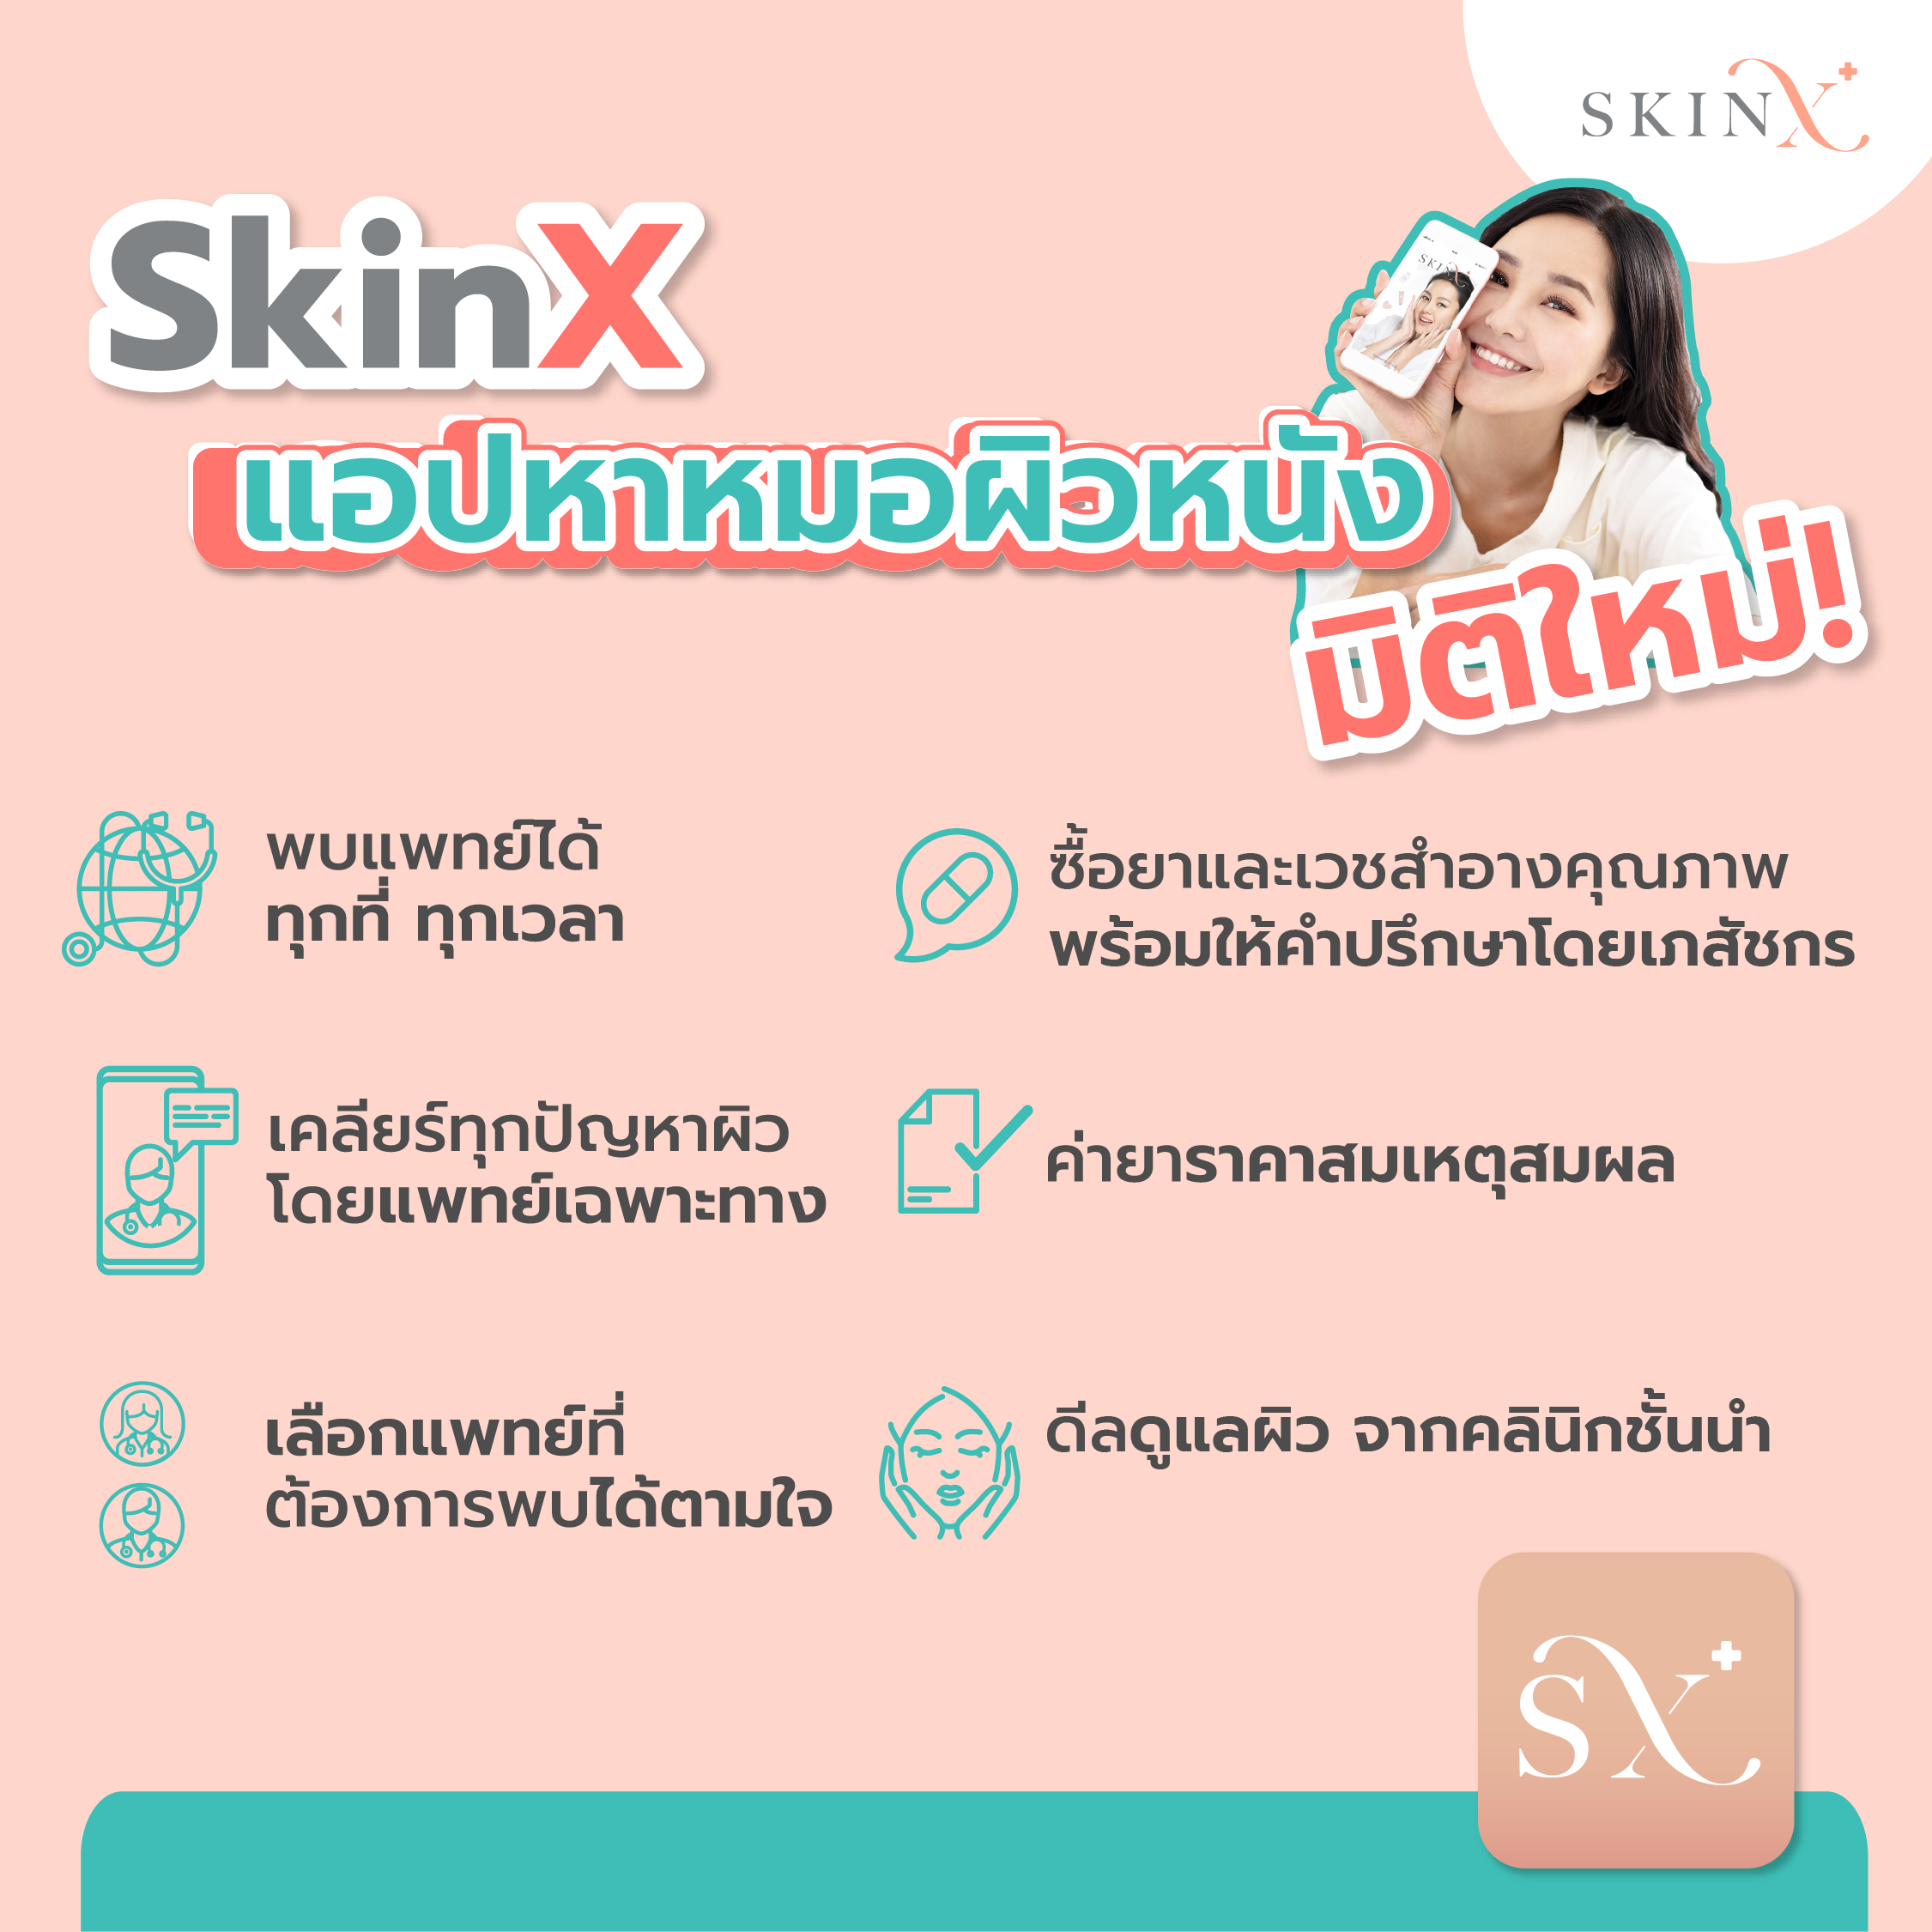 มุมมองเพิ่มเติมของสินค้า SkinX E-Vo ส่วนลด 500 บาท สำหรับทุกการใช้จ่ายใน SkinX